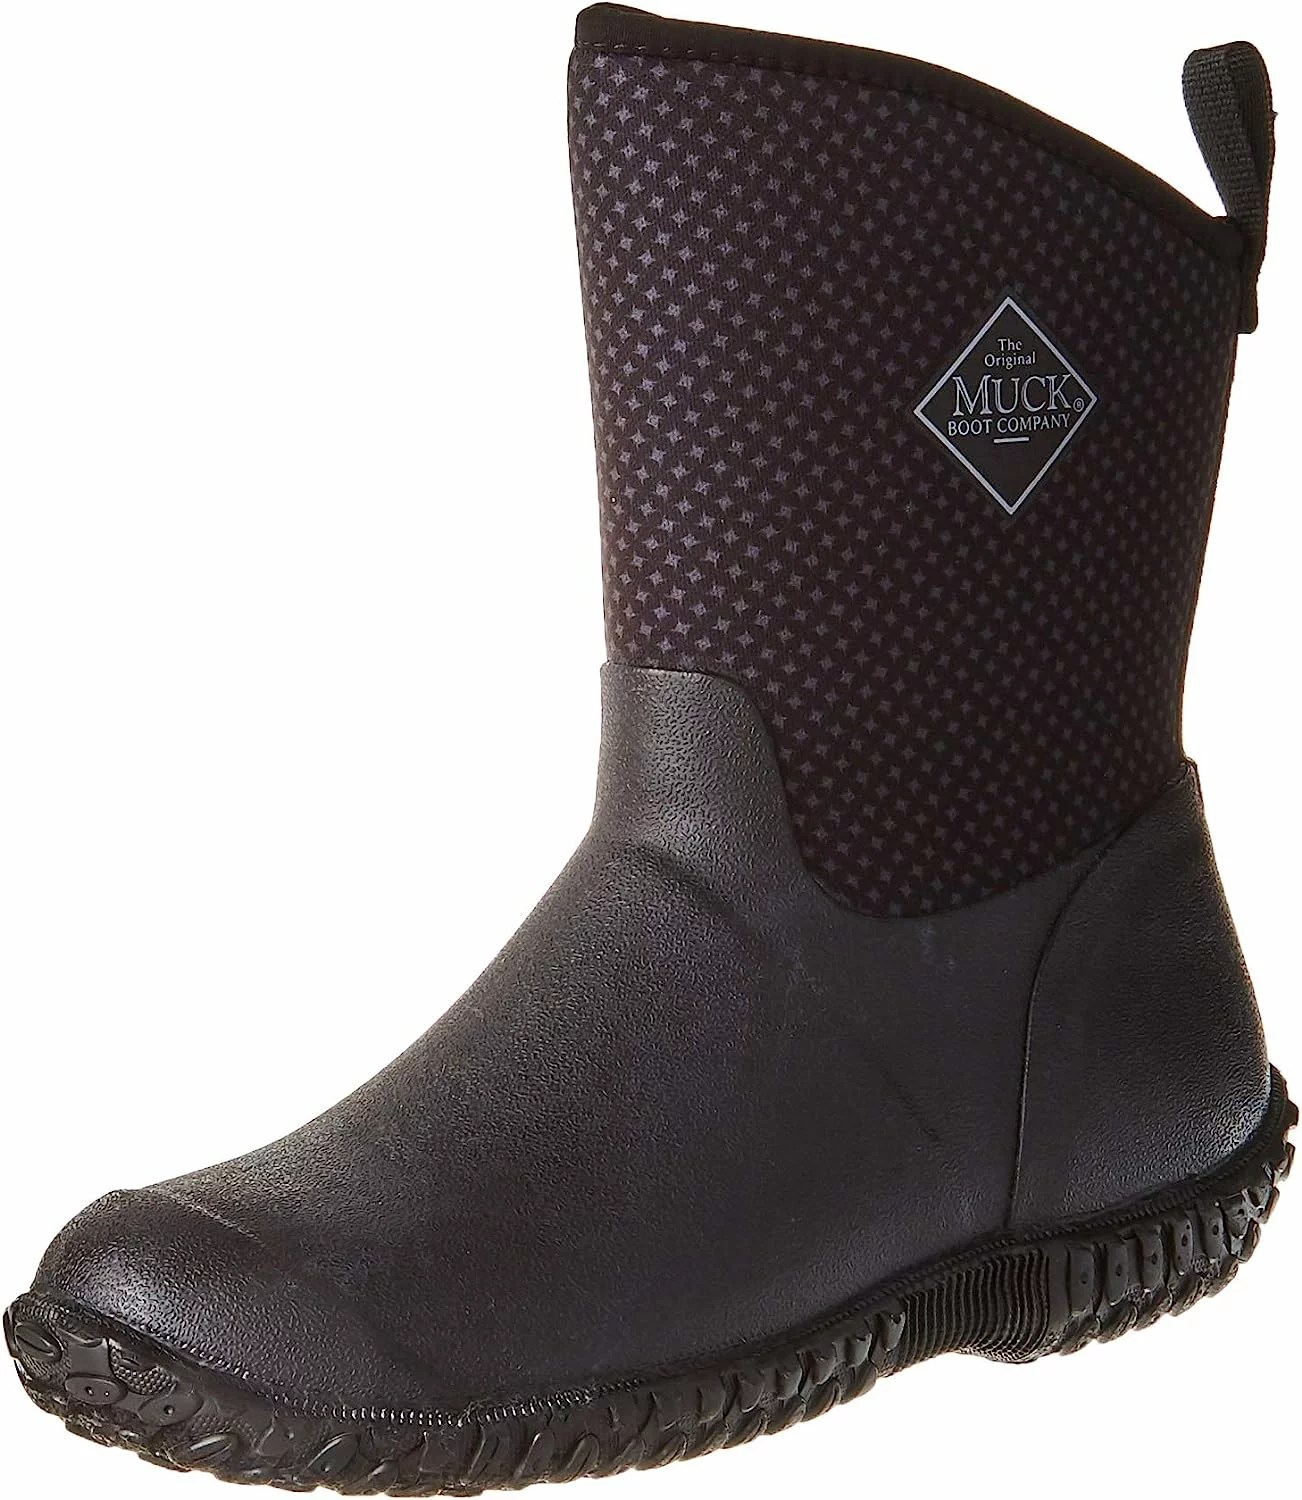 Muck Boot Rubber Garden Boots, rain boots for women